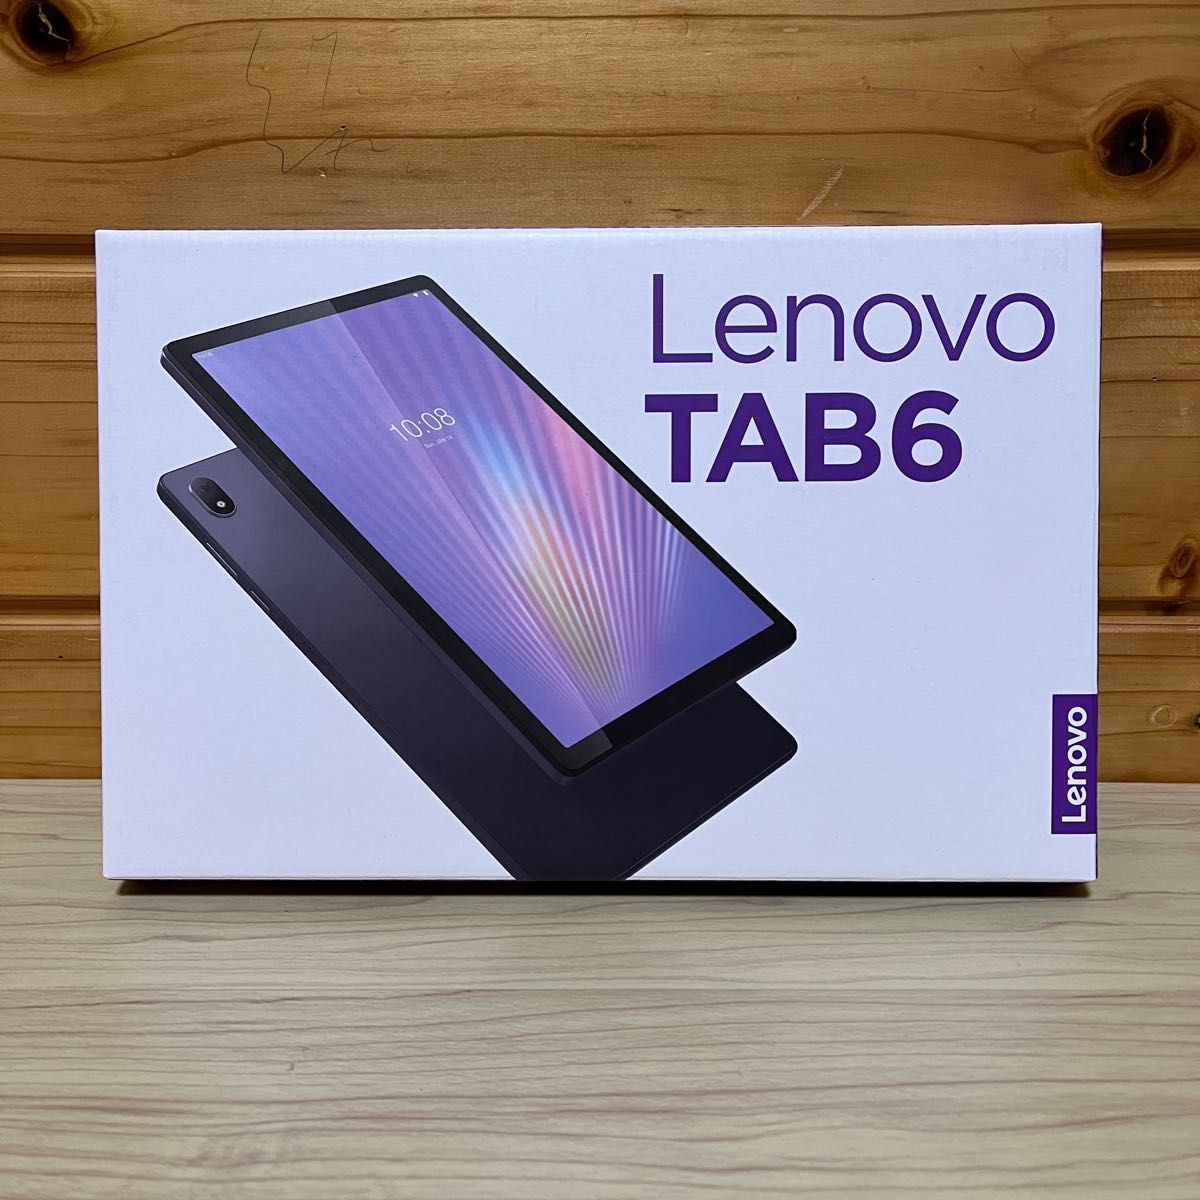 Lenovo Tab6 アビスブルー SIMフリー ガラス&ケース セット タブレット